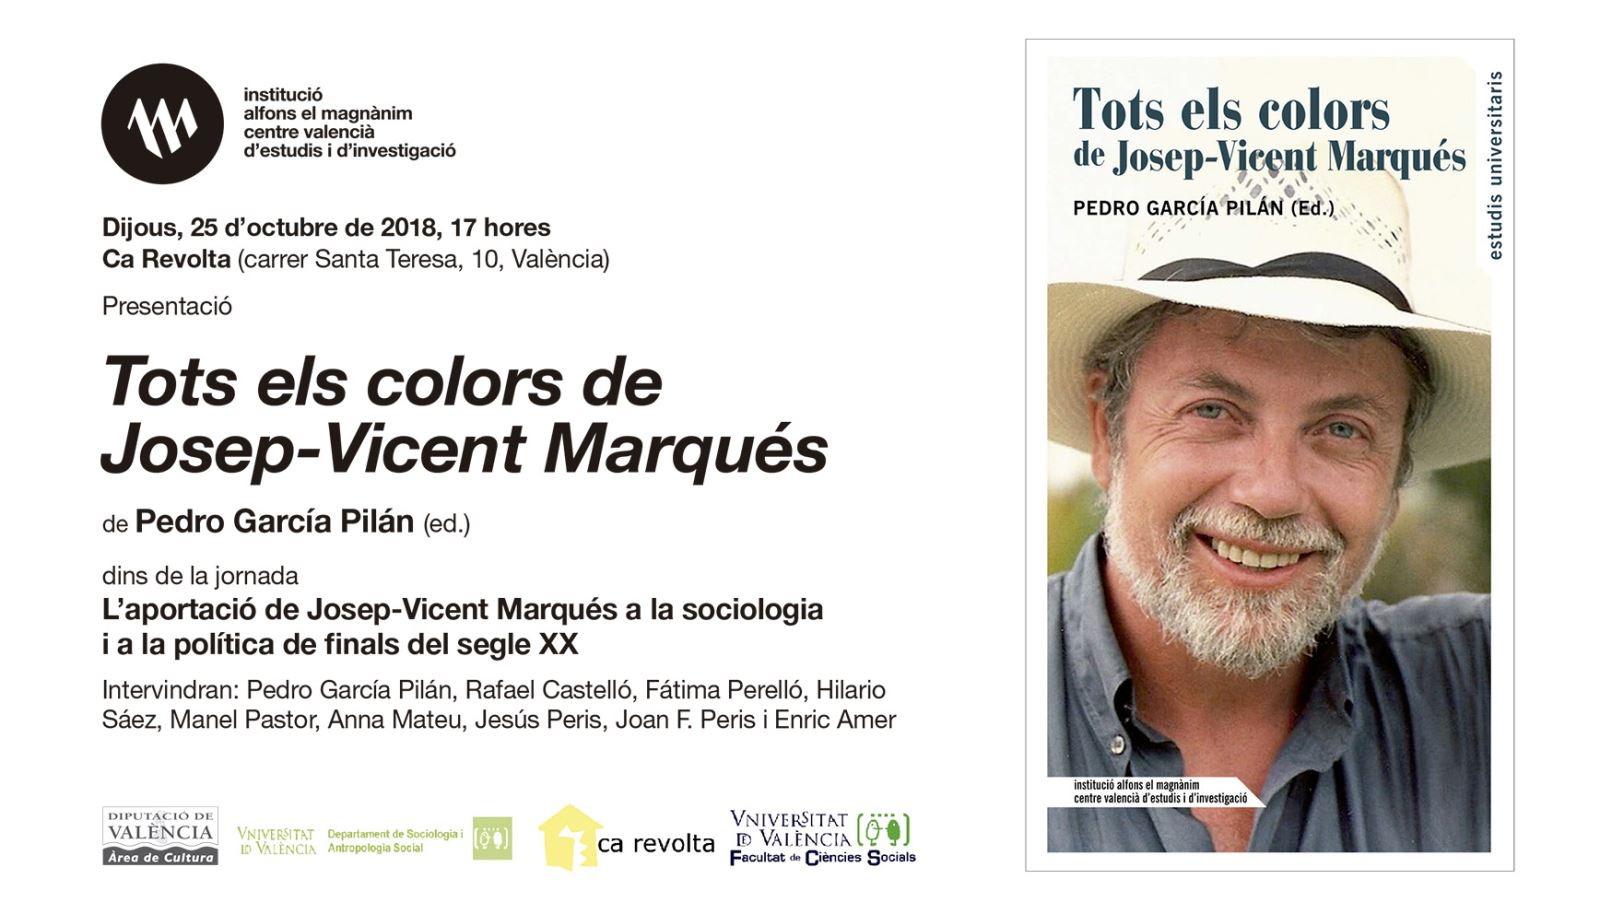 El Magn� nim homenajea a Josep-Vicent Marqués en el 10º aniversario de su muerte con un libro y una jornada monográficos